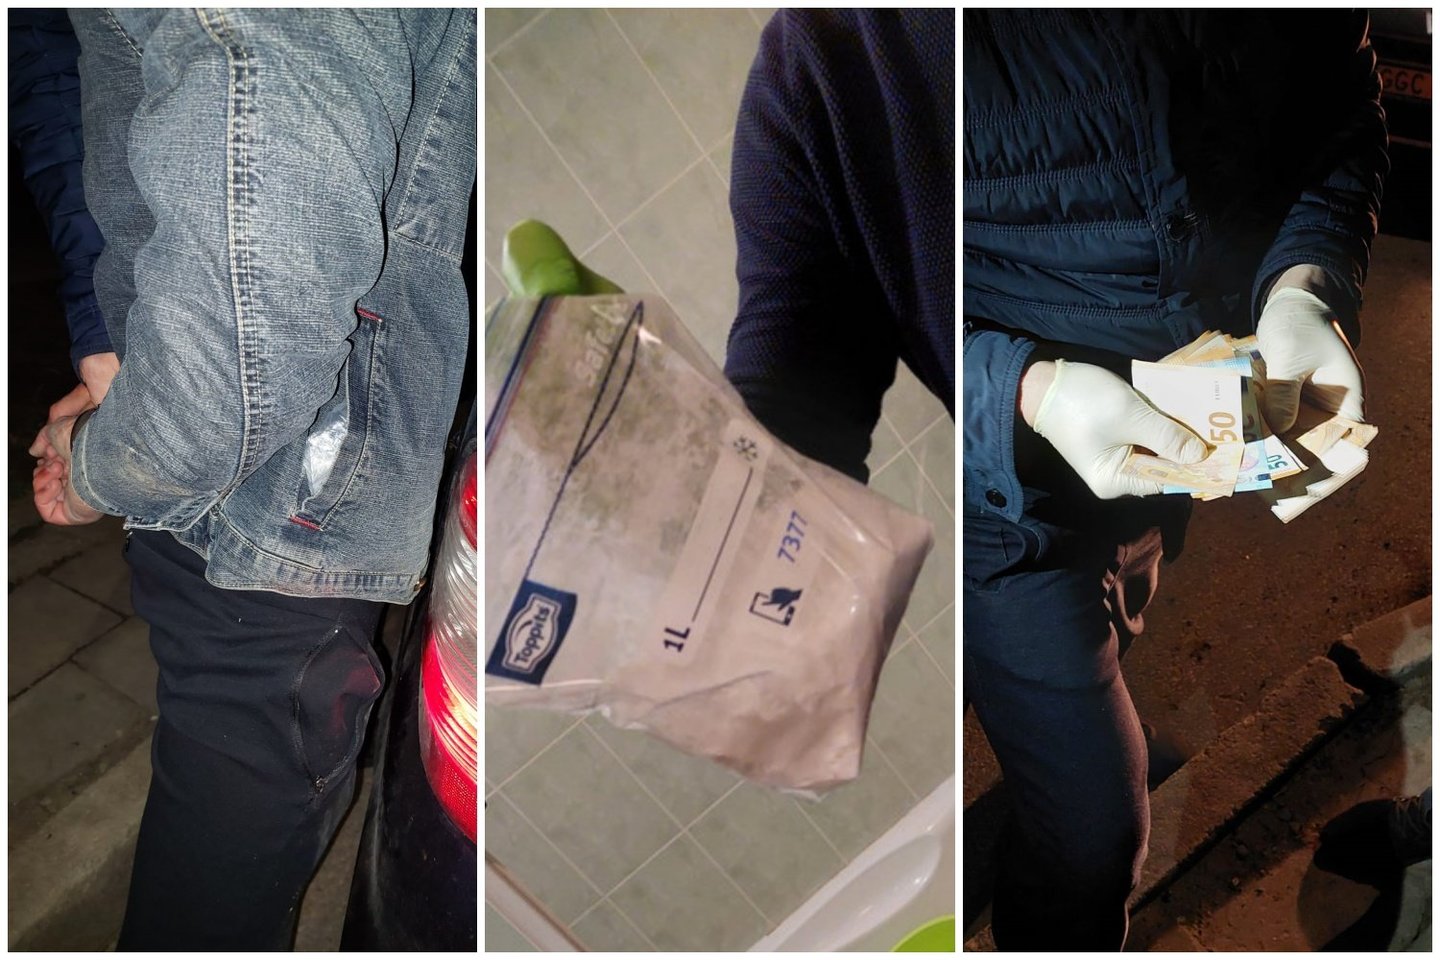  Kokaino prikimštomis kišenėmis alytiškis pareigūnams įkliuvo pakeliui į bernvakarį.<br> Alytaus apskrities VPK nuotr.